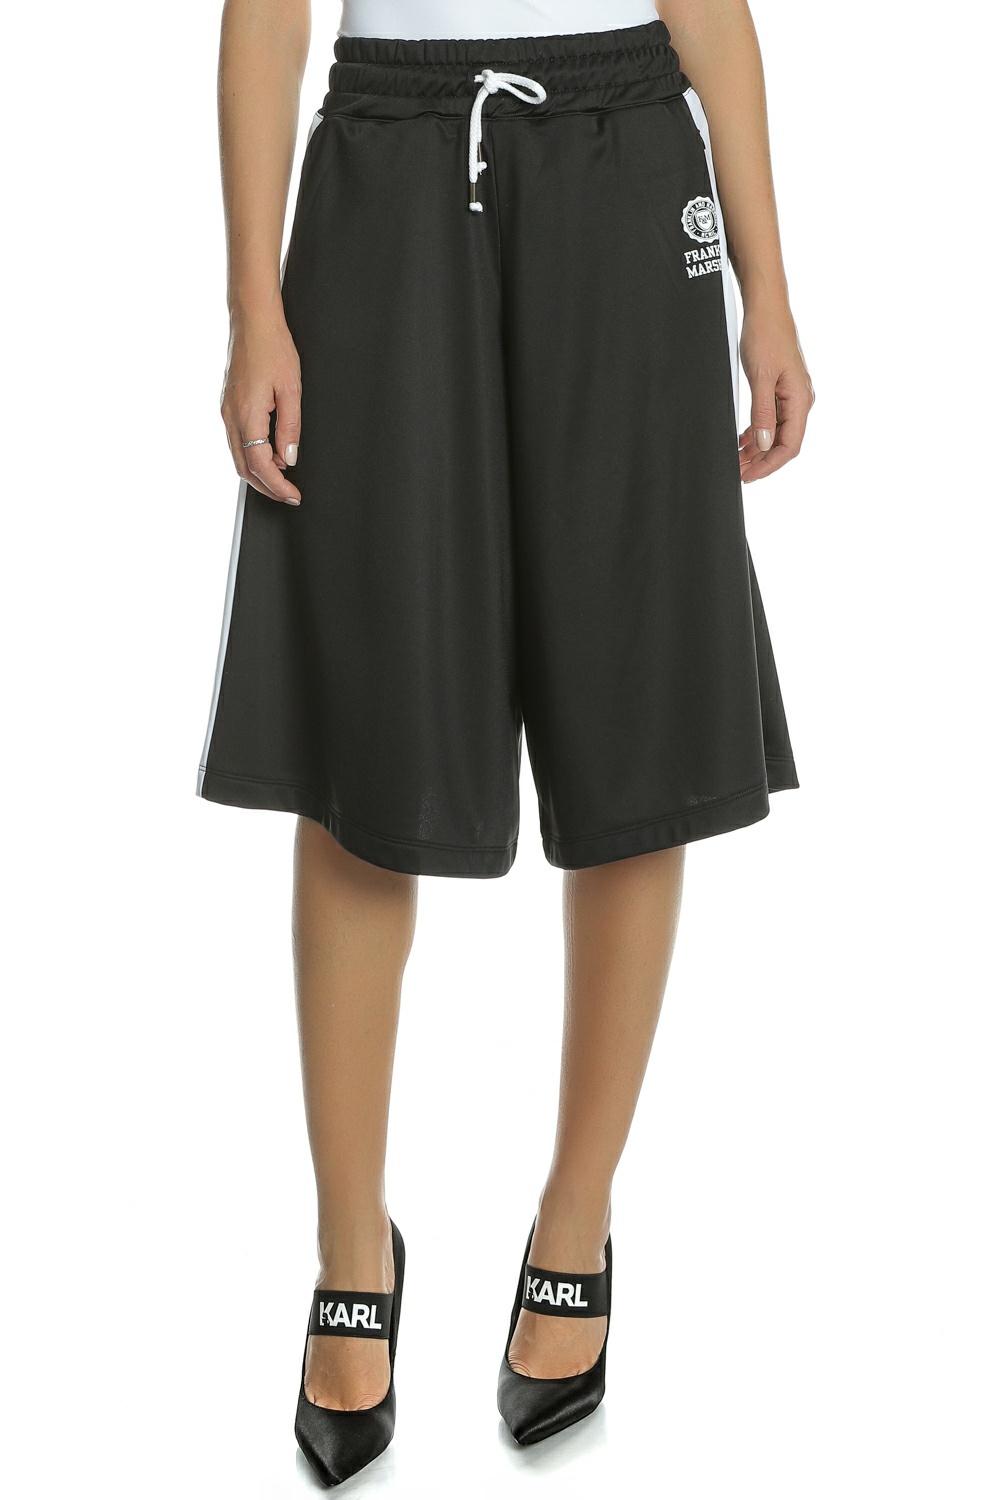 Γυναικεία/Ρούχα/Παντελόνια/Φόρμες FRANKLIN & MARSHALL - Γυναικείο crop παντελόνι φόρμας FRANKLIN & MARSHALL μαύρο